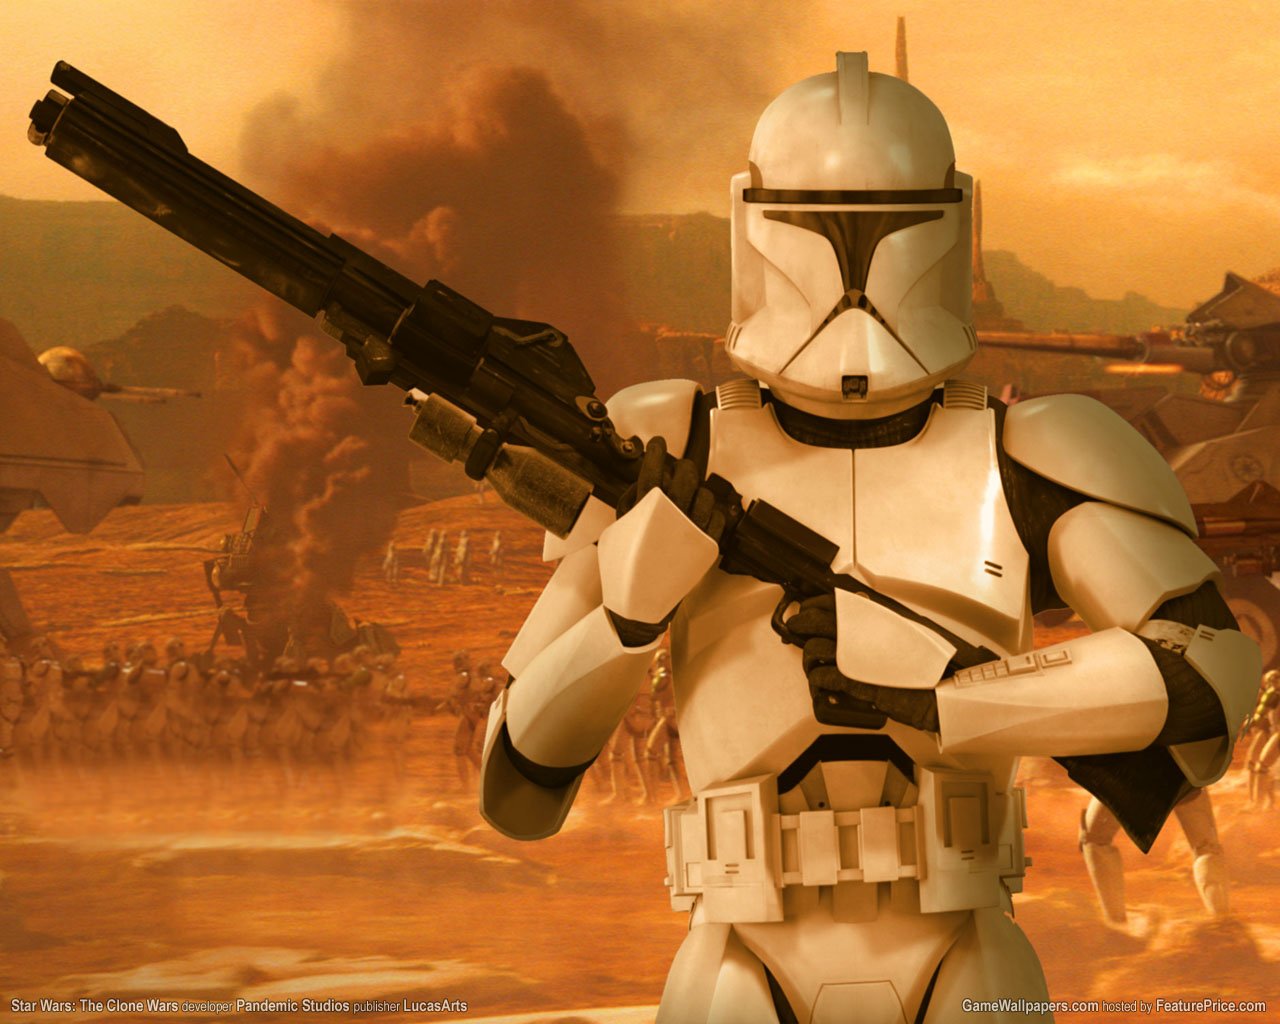 Laden Sie Star Wars: Clone Wars HD-Desktop-Hintergründe herunter